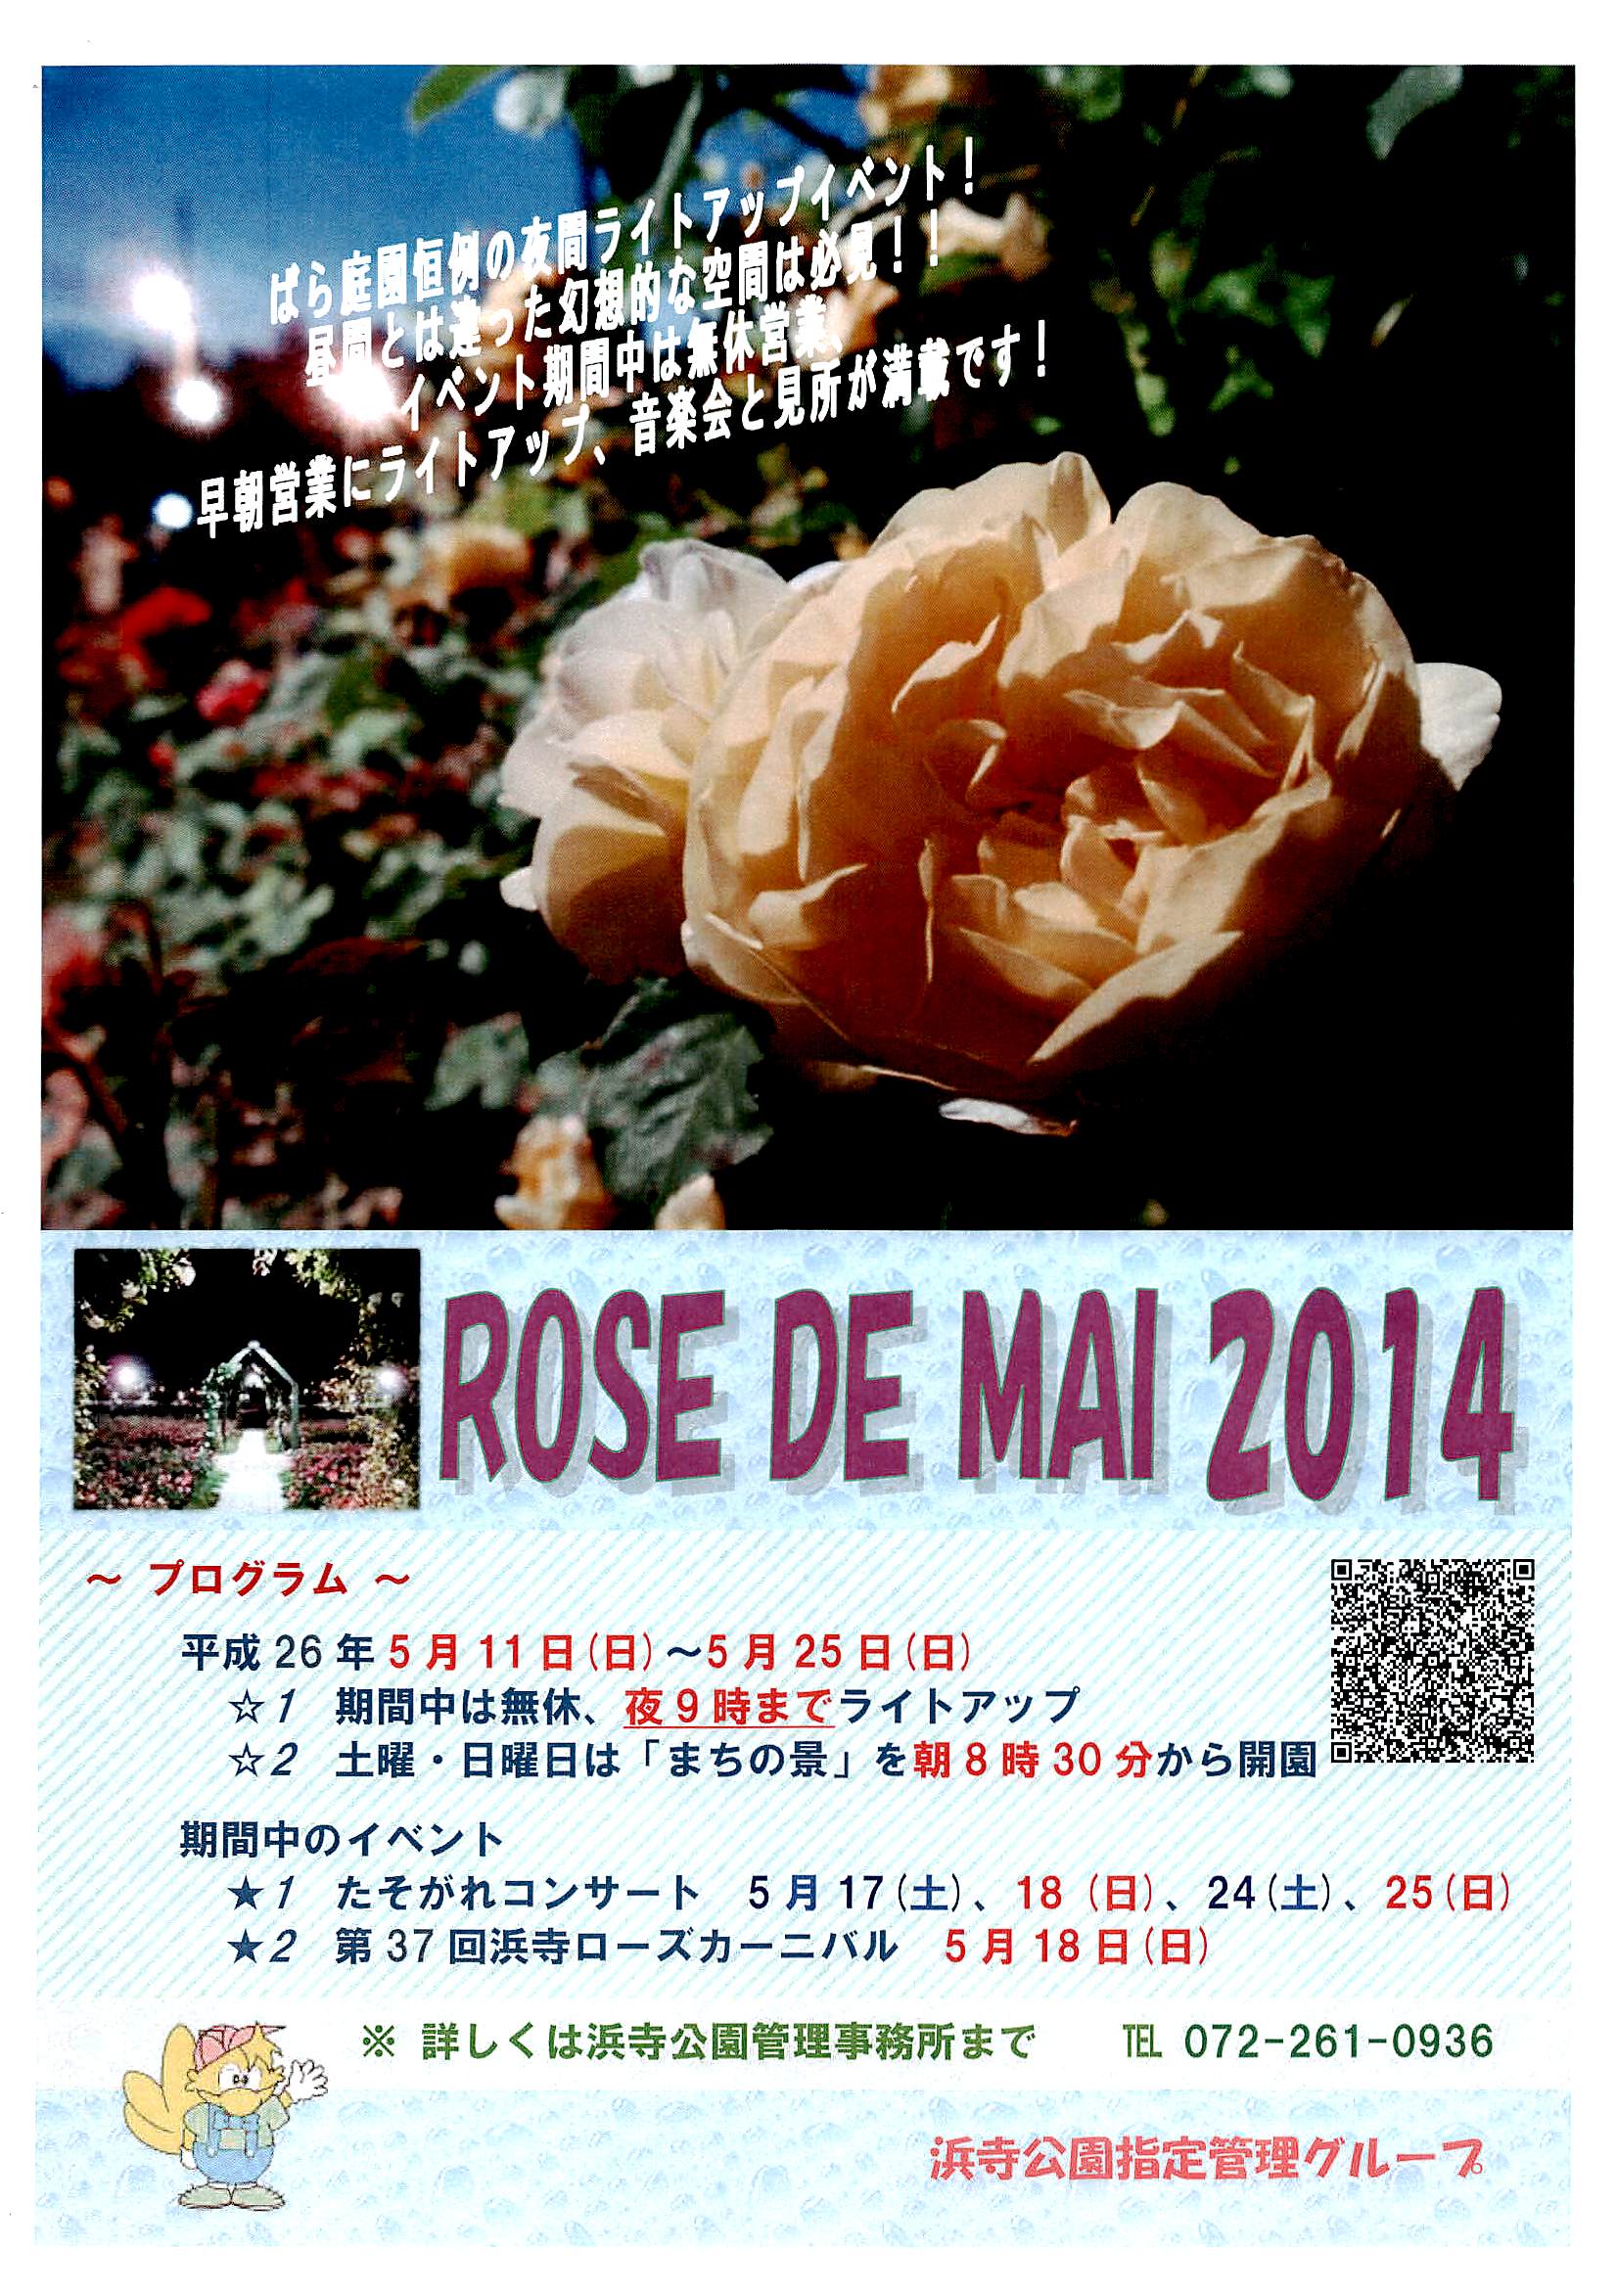 Rose De Mai 14 ばら庭園夜間ライトアップ コンサート 京都市立芸術大学